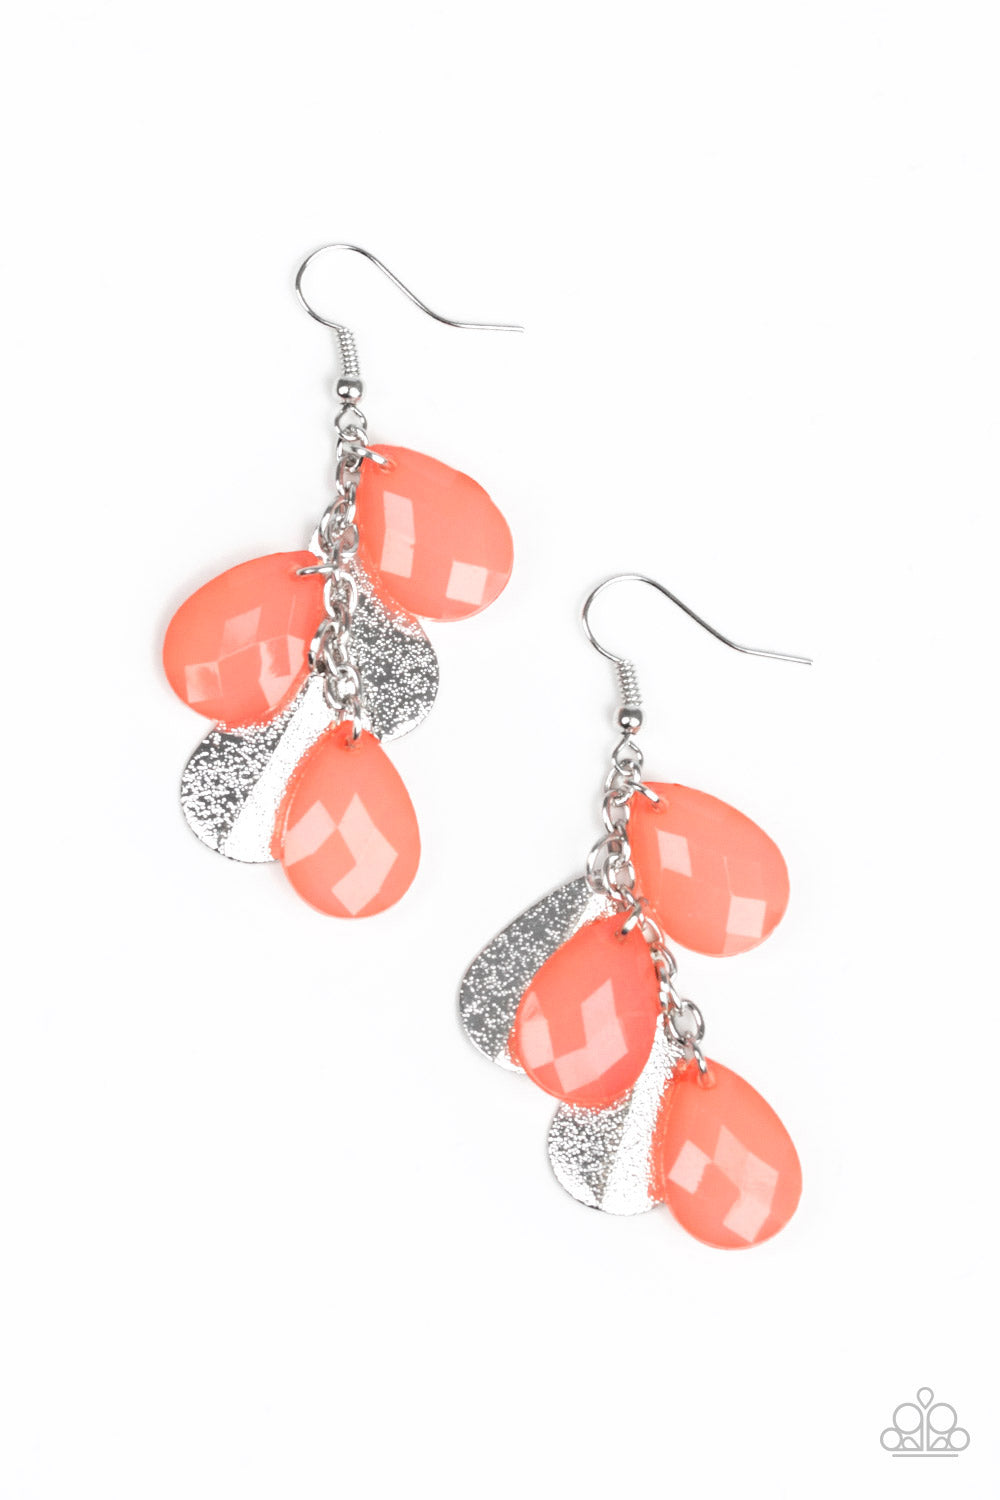 Seaside Stunner - Orange Fishhook Earrings - Susan's Jewelry Shop